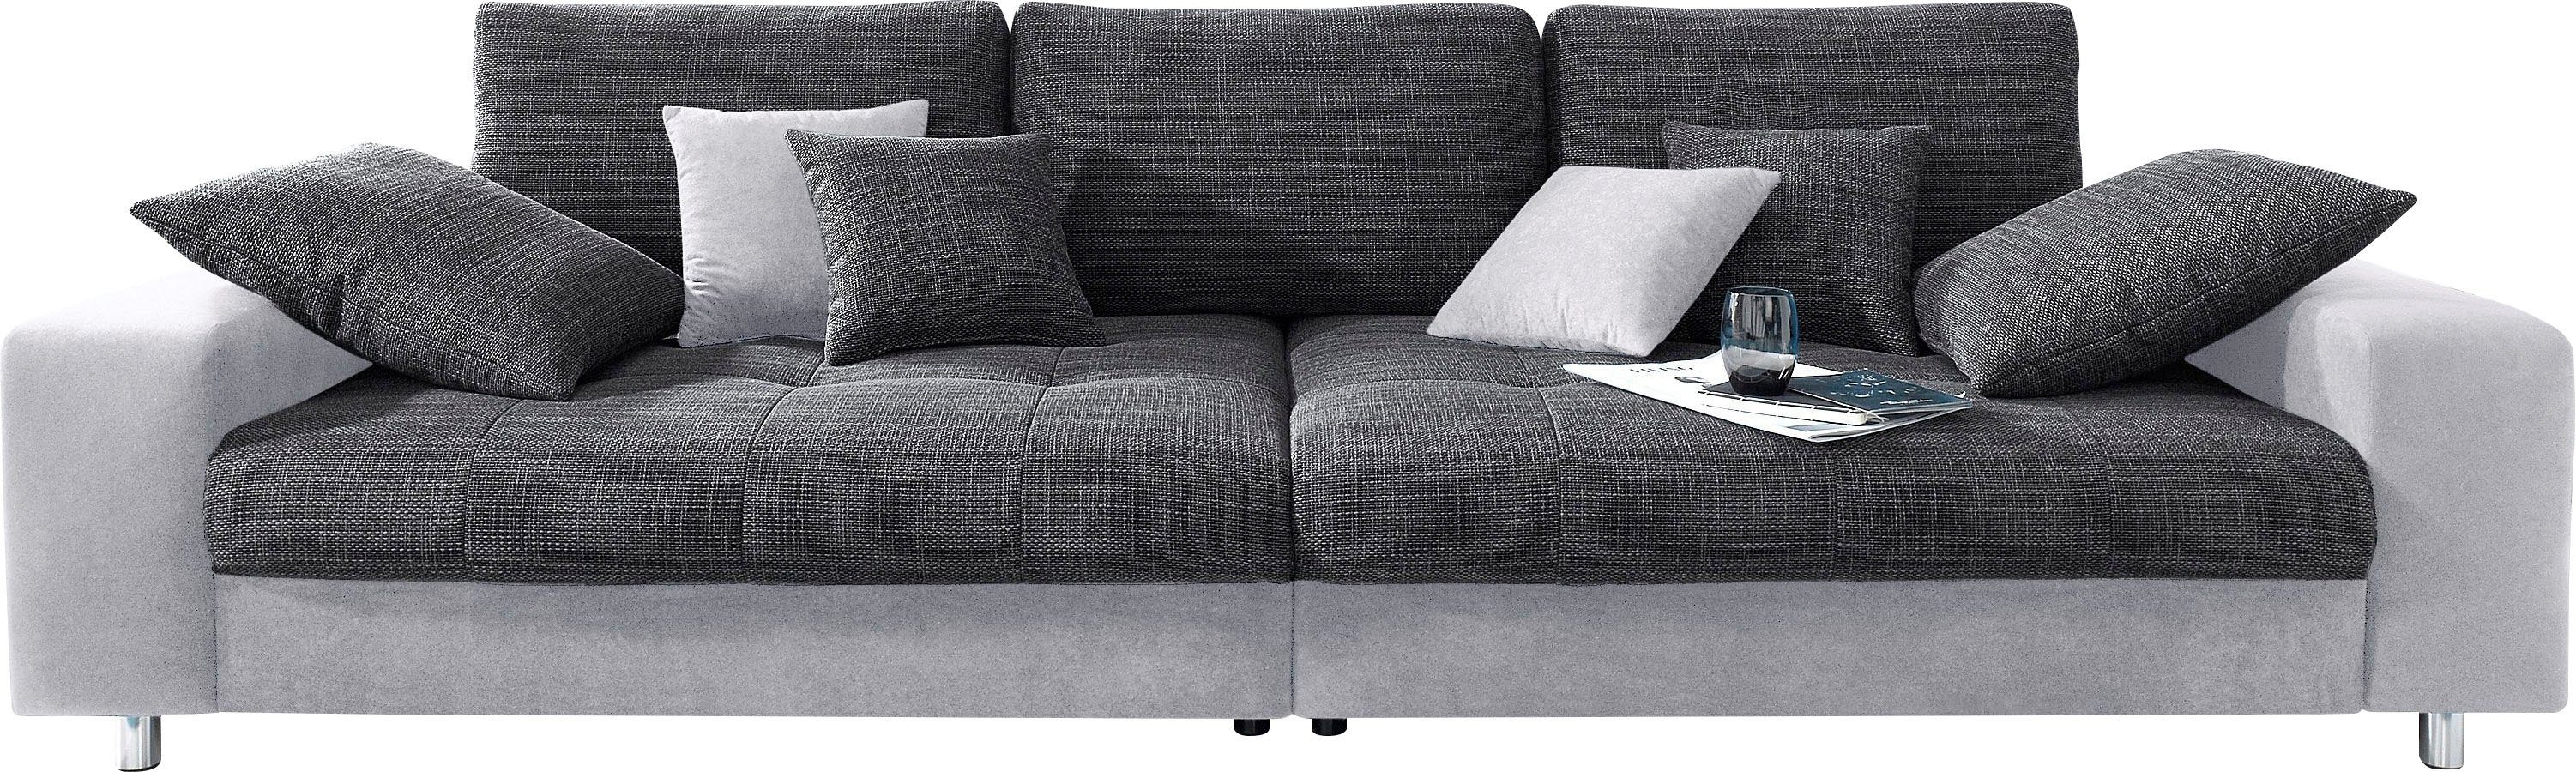 Mr. Couch Big-Sofa »Tobi«, wahlweise mit Kaltschaum (140kg Belastung/Sitz)  und RGB-Beleuchtung